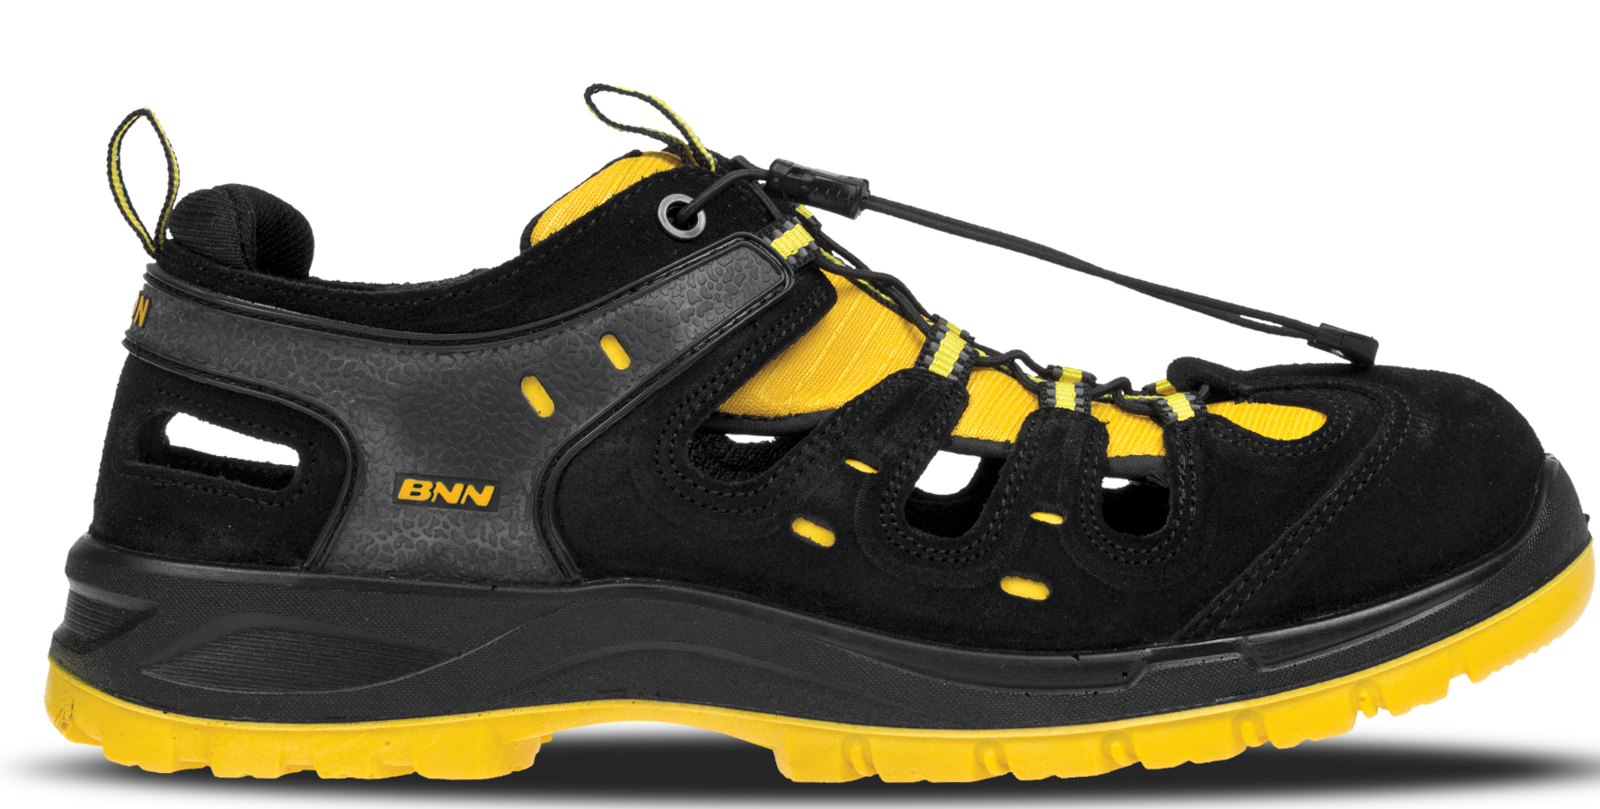 Bezpečnostné sandále Bombis lite NM S1 - veľkosť: 43, farba: žltá